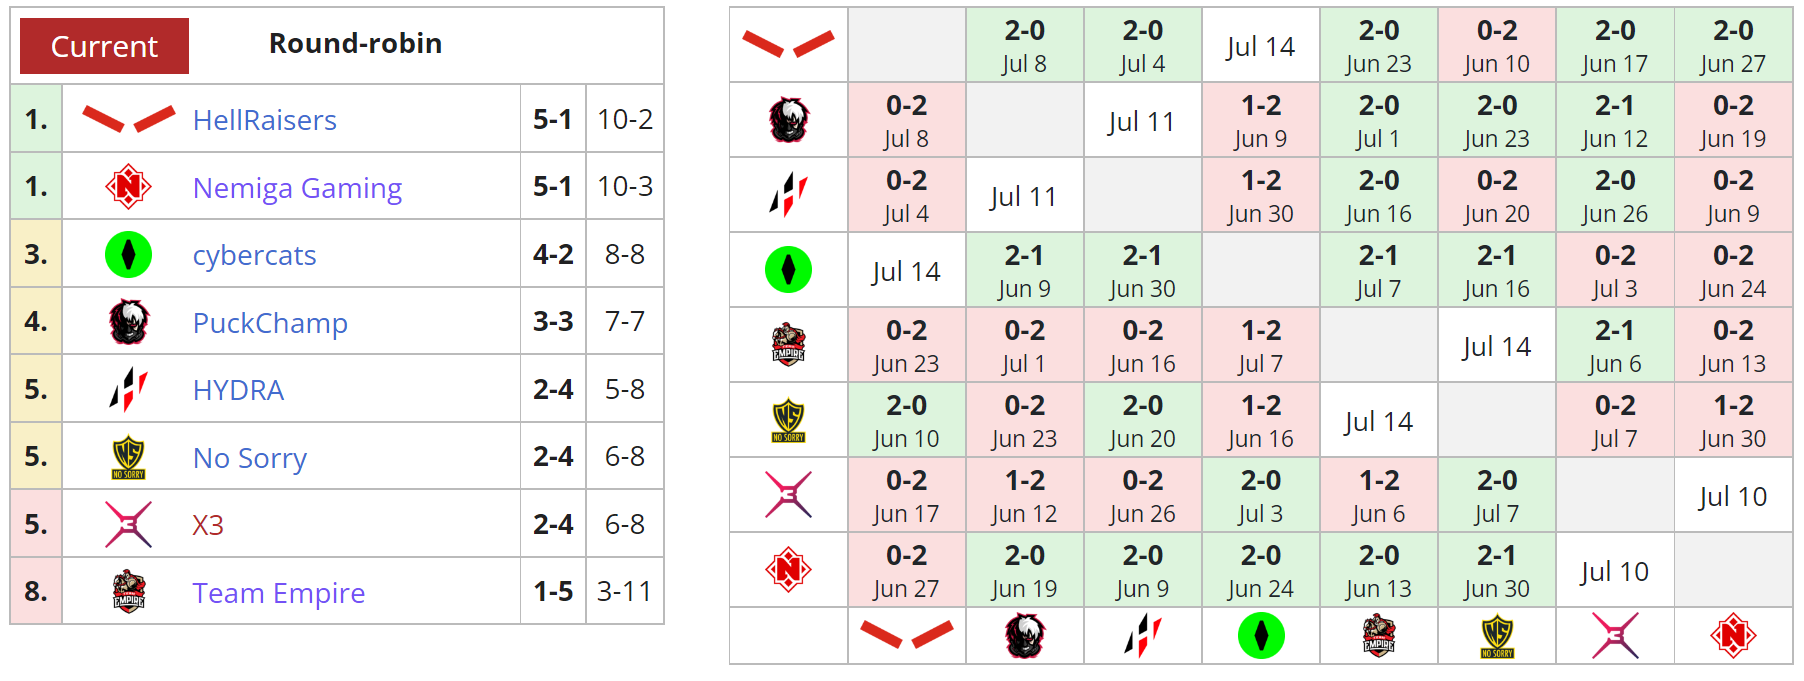 Текущее положение команд в нижнем дивизионе DPC 2021/22: Season 3 для СНГ